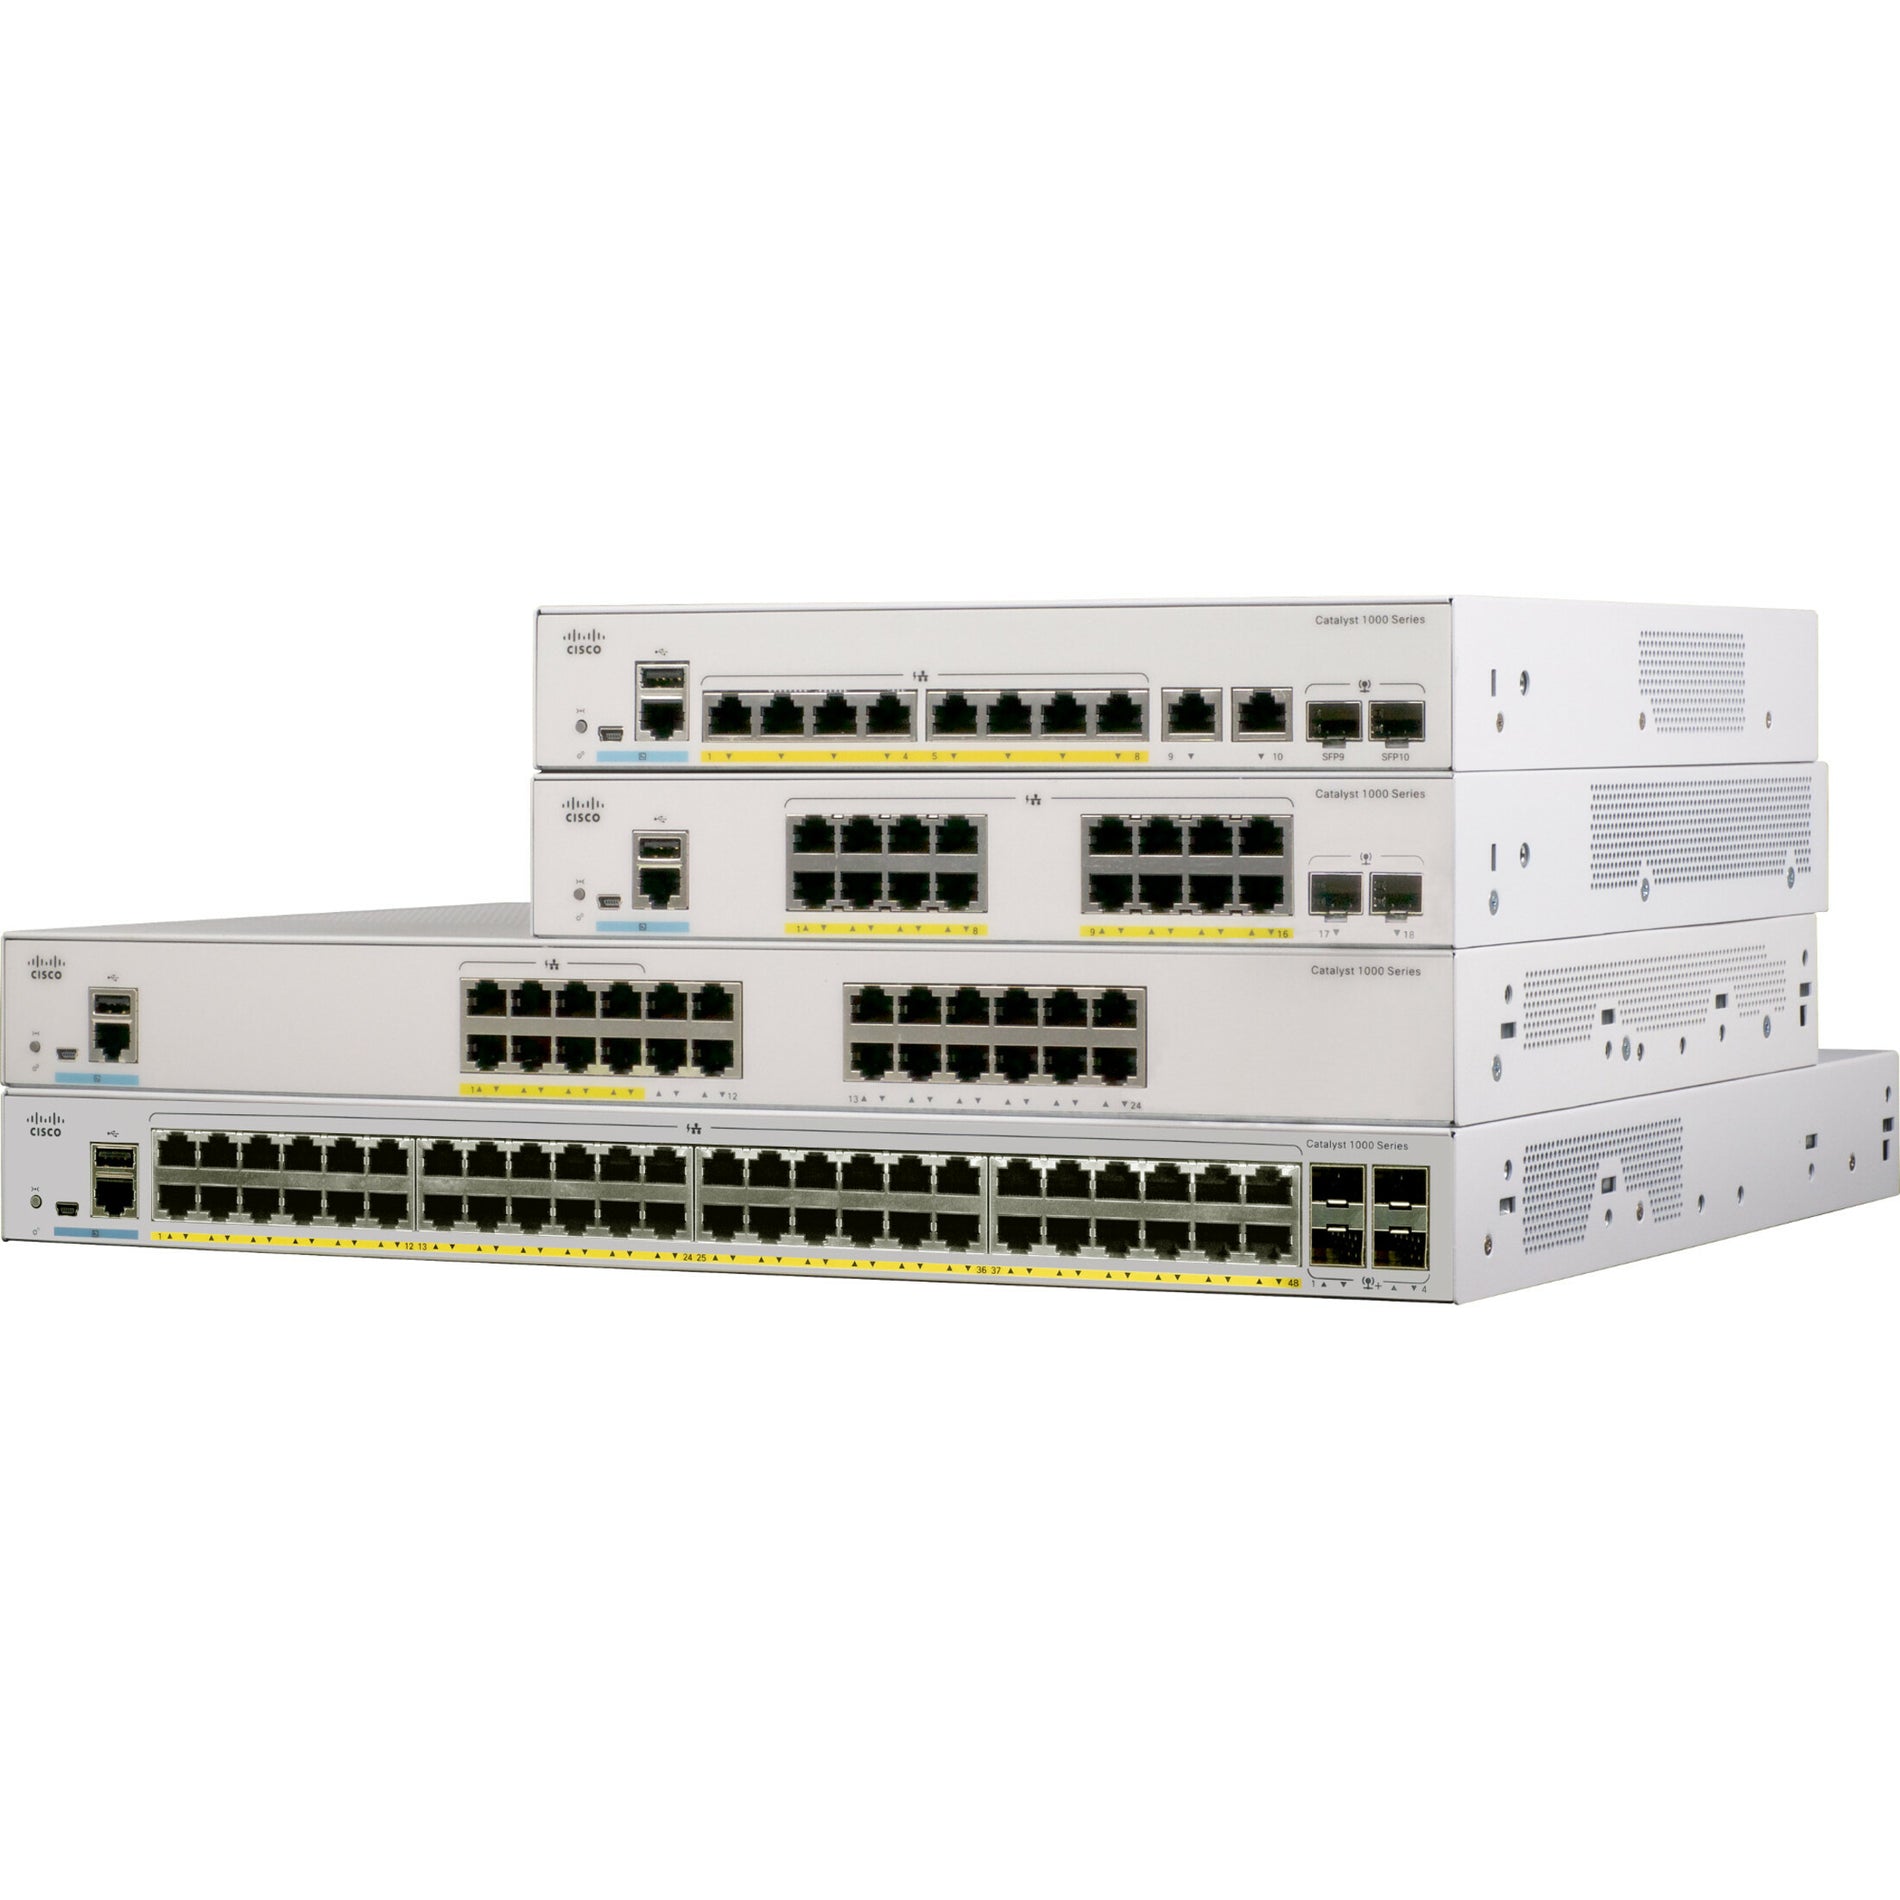 Cisco C1000-16T-2G-L Catalyst C1000-16T Ethernet Switch, 16 Gigabit Ethernet Ports, 2 Gigabit Ethernet Uplink Ports